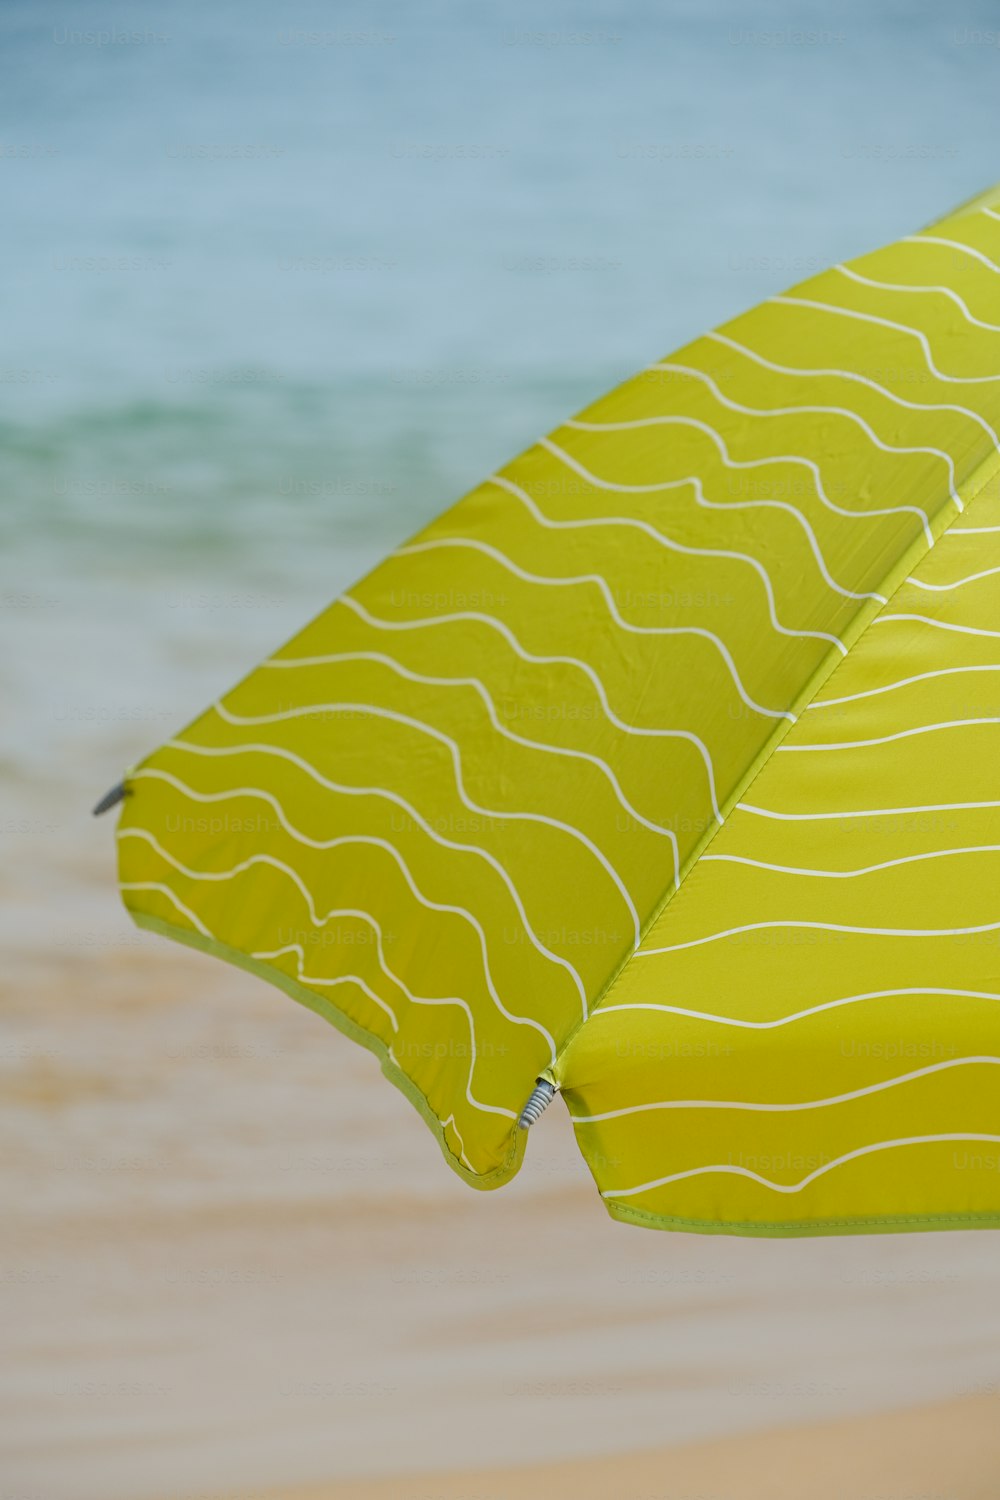 a close up of an umbrella on a beach